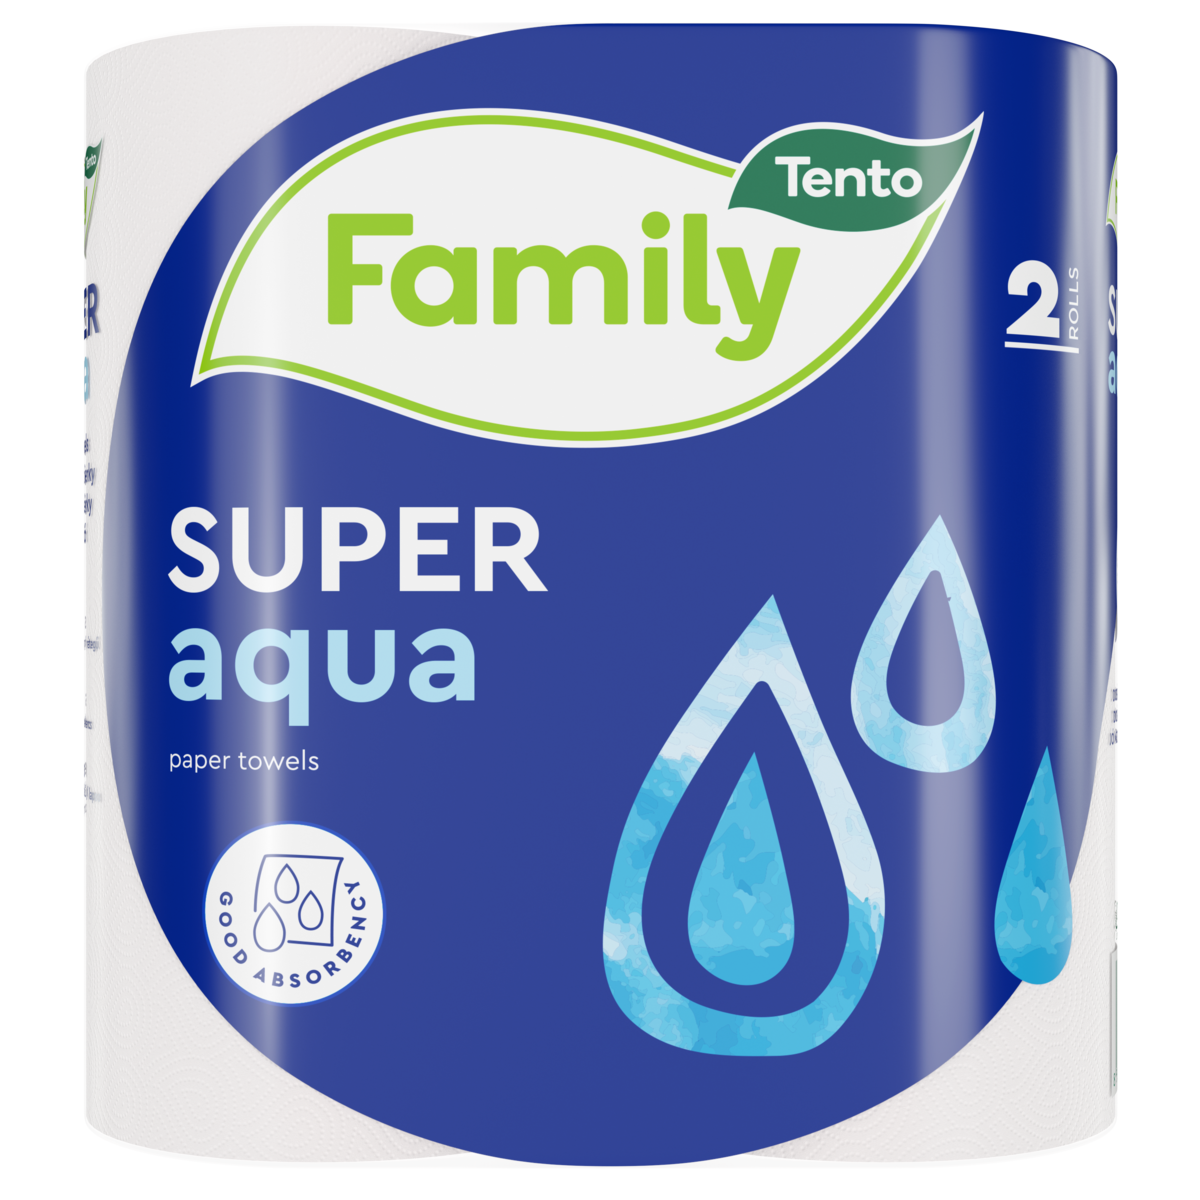 Tento Family Super Aqua